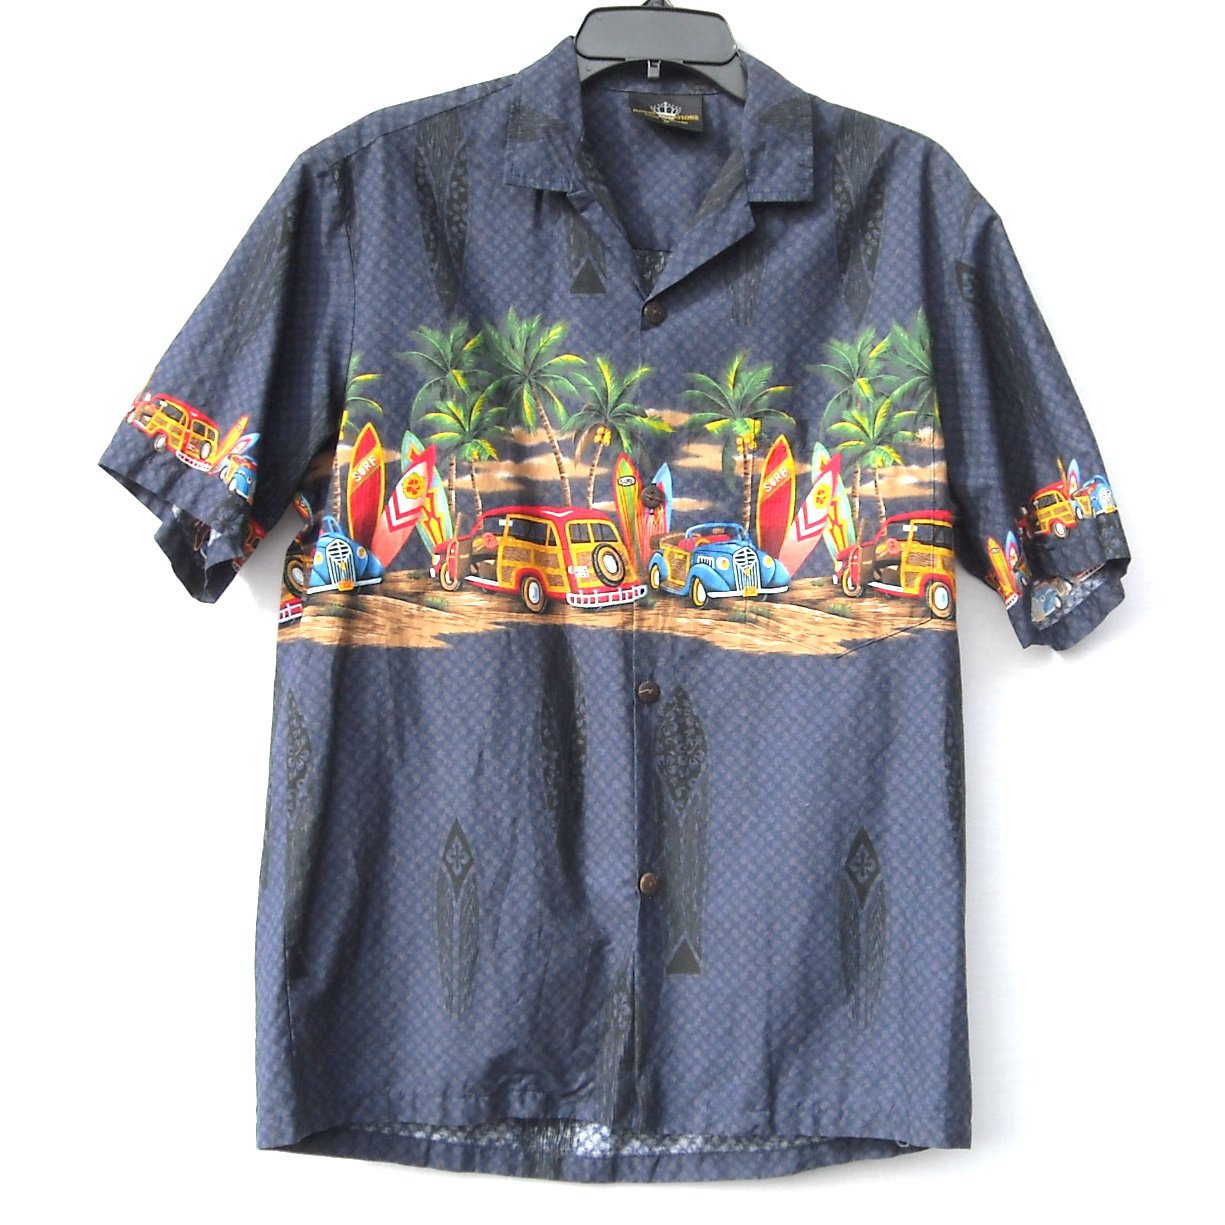 Royal Creations Men's Hawaiian Shirt size M